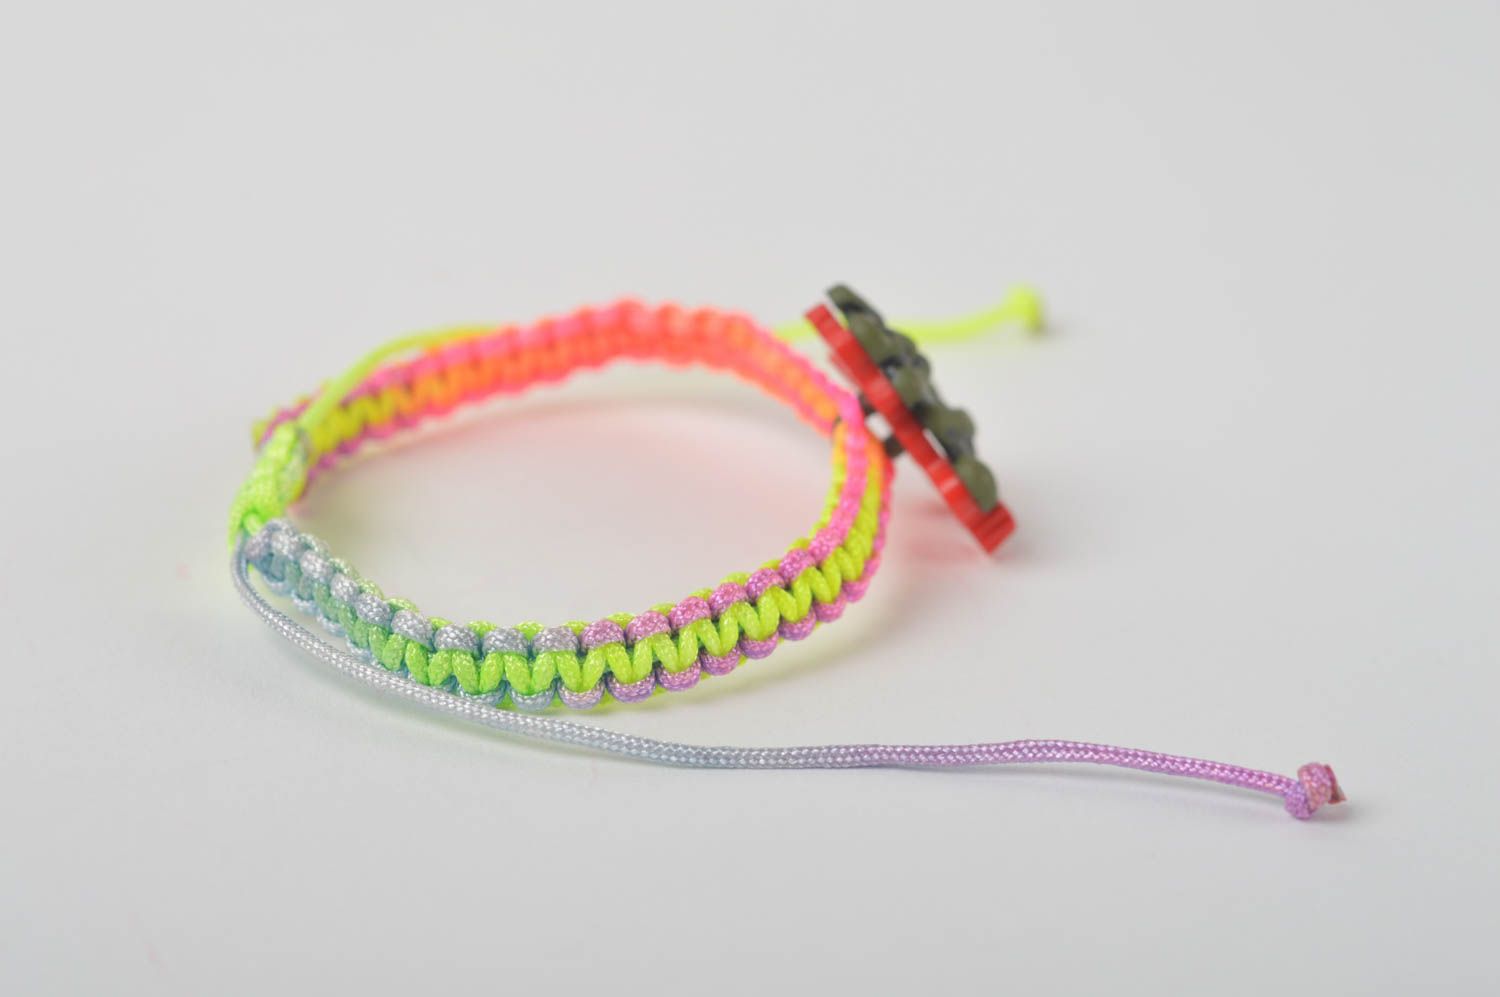 Textil Armband handgemacht Mode Schmuck Geschenk für Mädchen geflochten schön foto 3